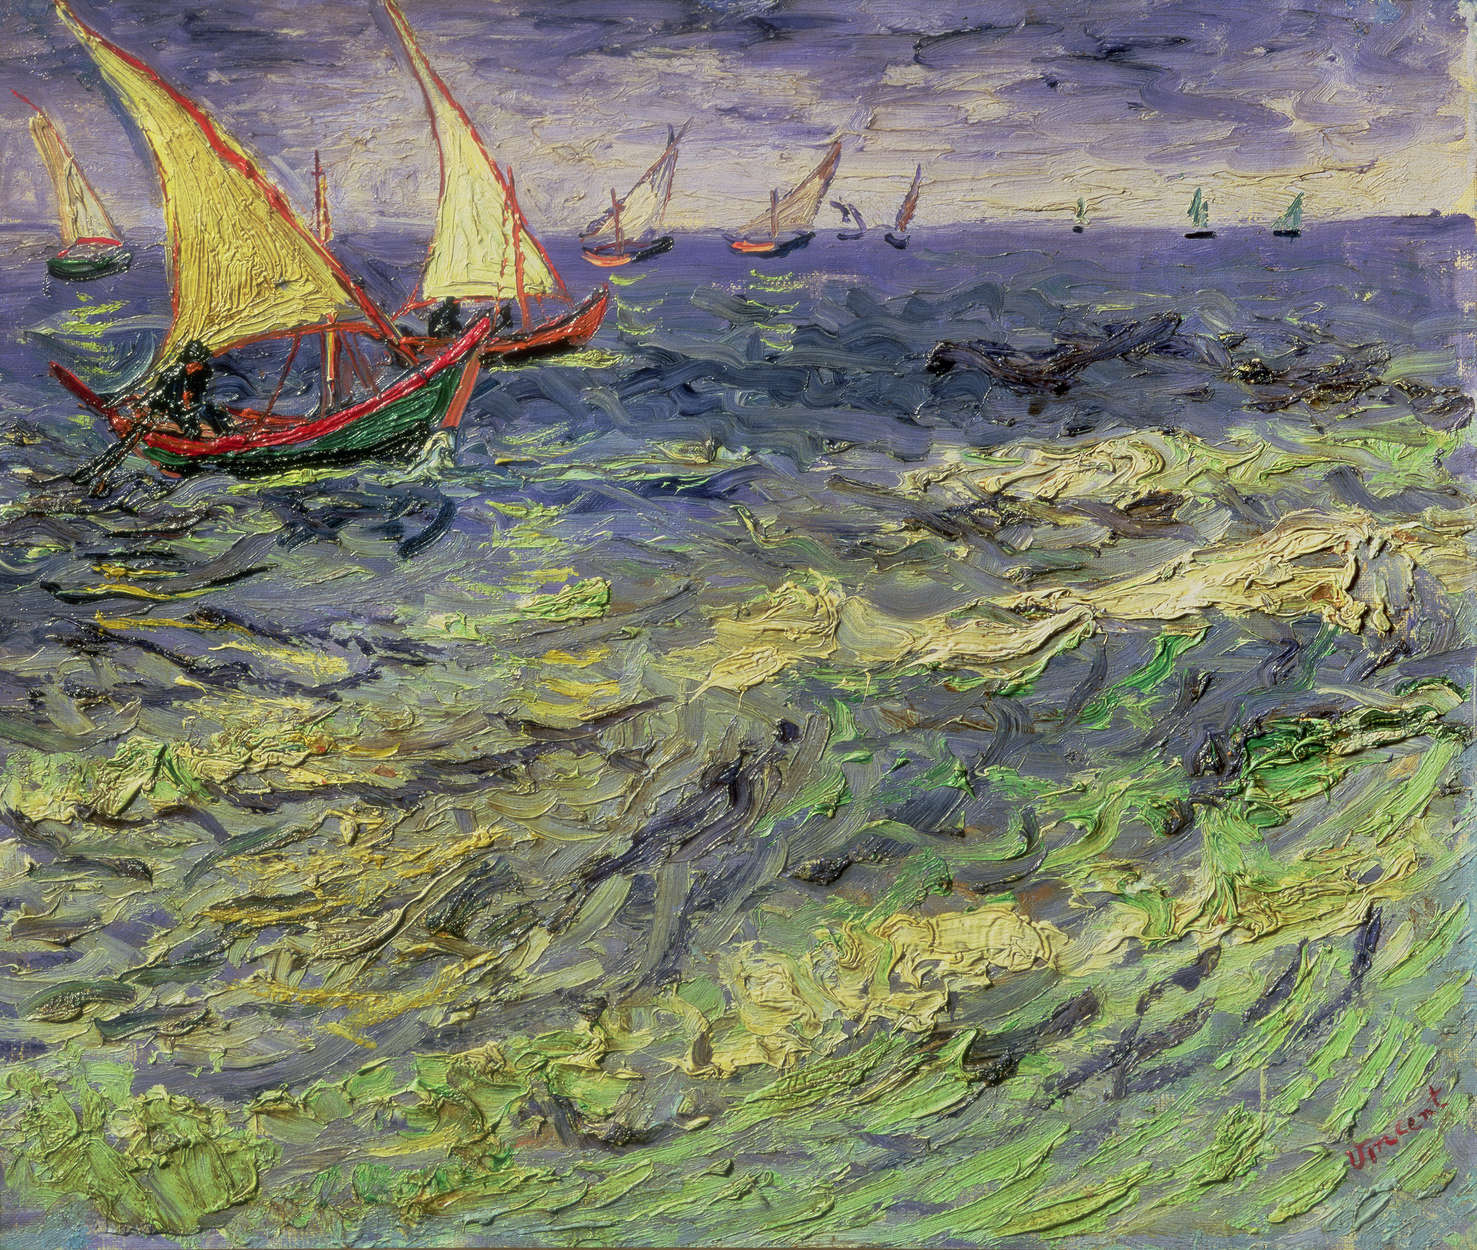             Mural "Paisaje marino en Saintes-Maries" de Vincent van Gogh
        